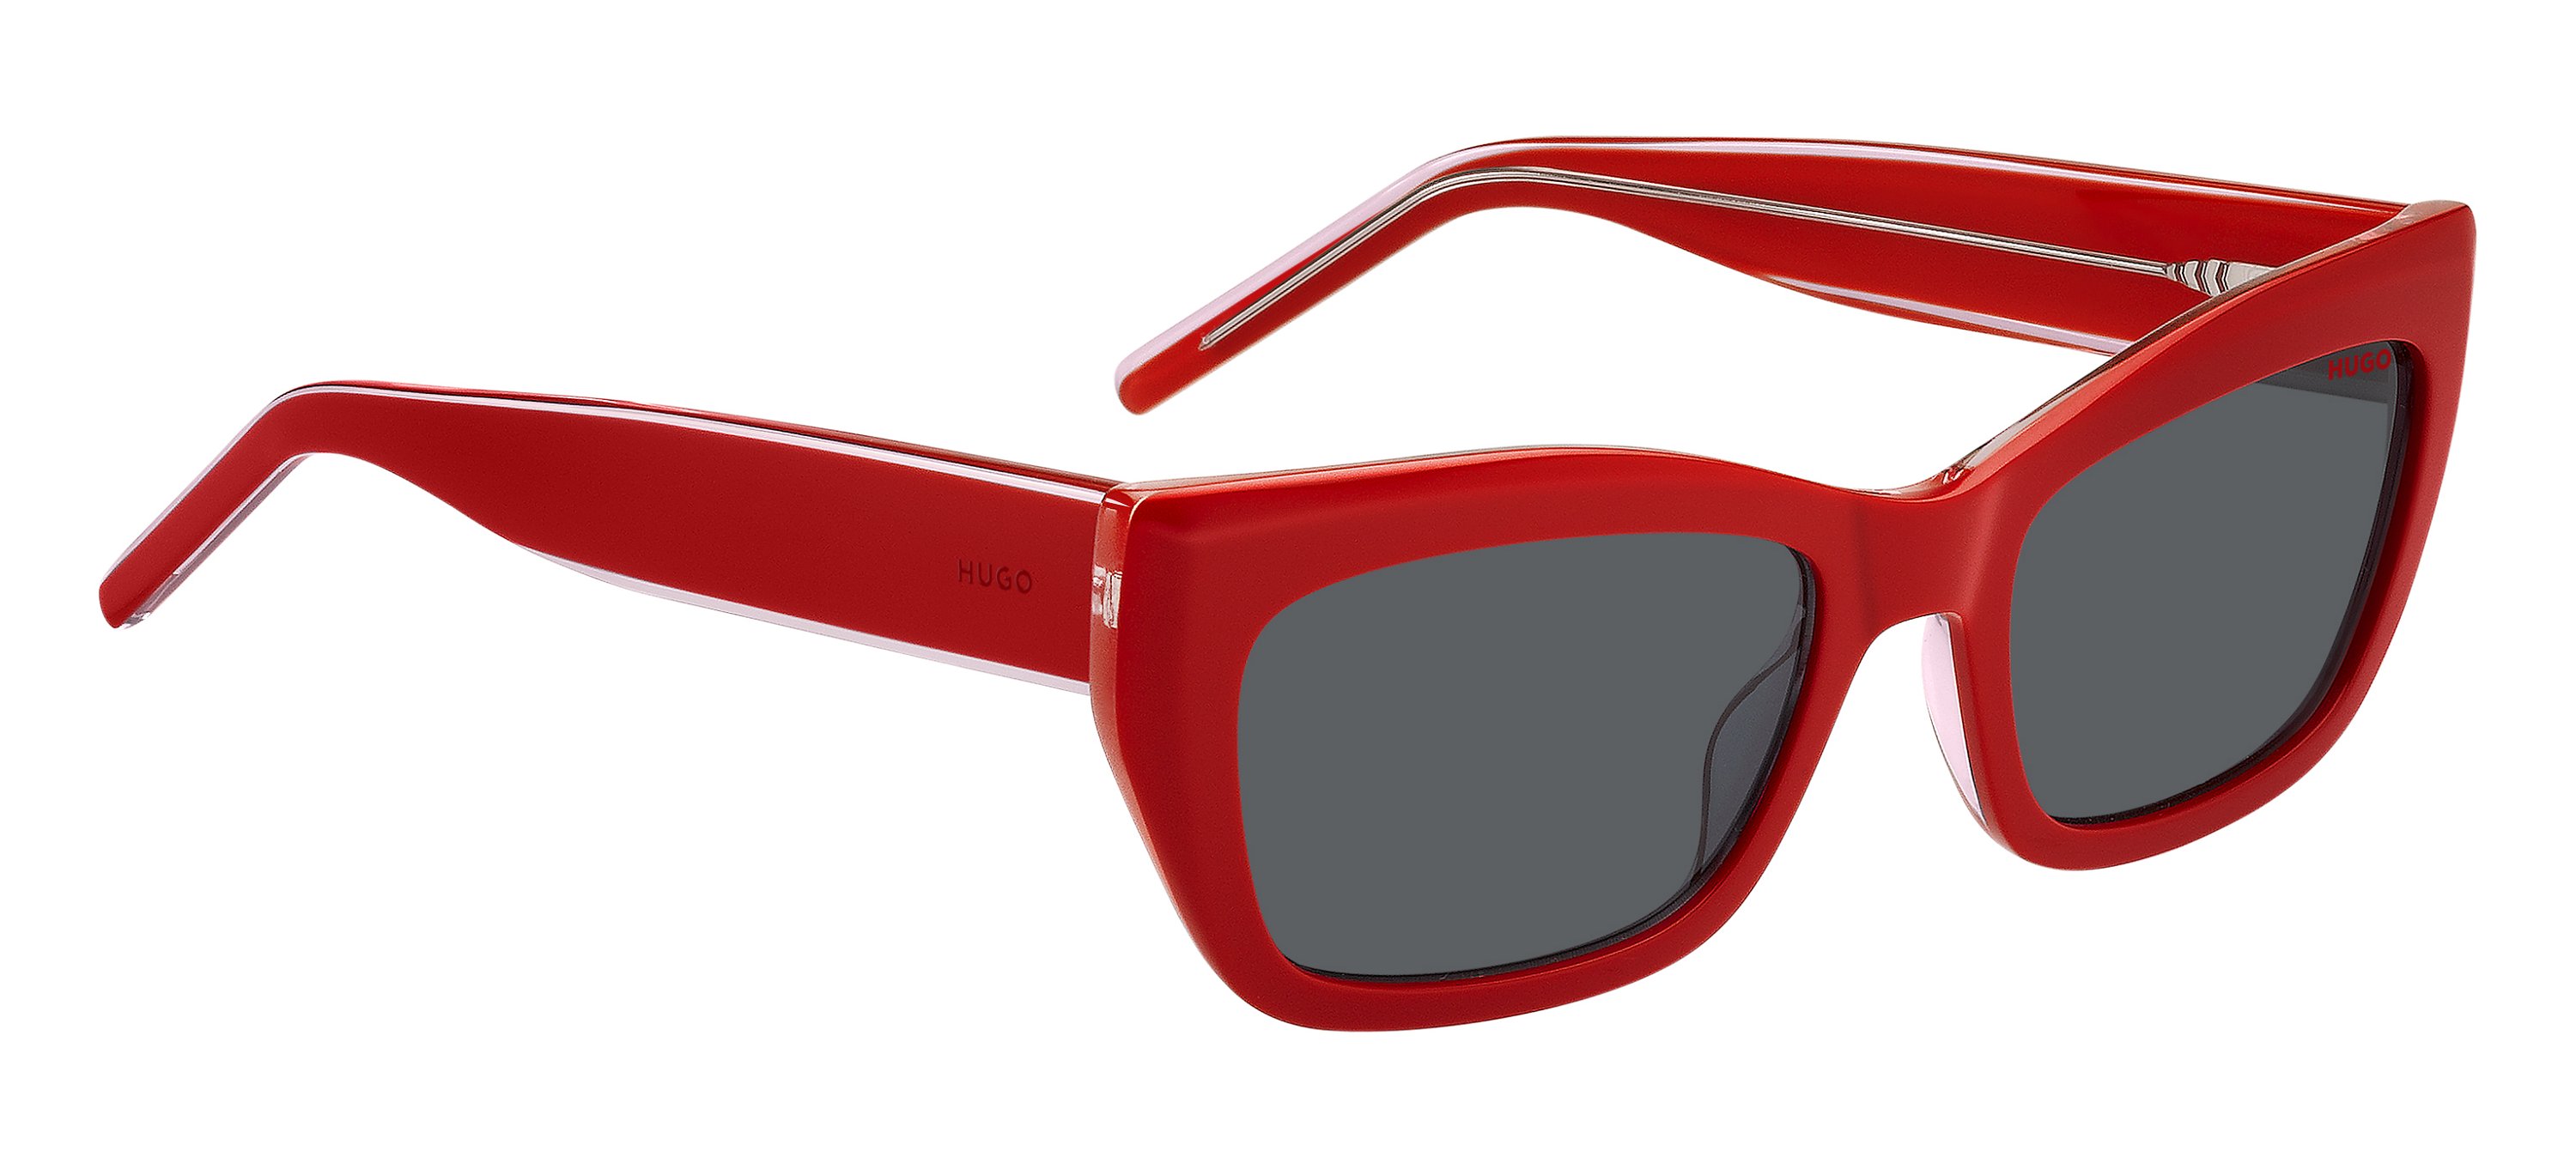 Das Bild zeigt die Sonnenbrille HG1301/S 92Y von der Marke Hugo in rot.